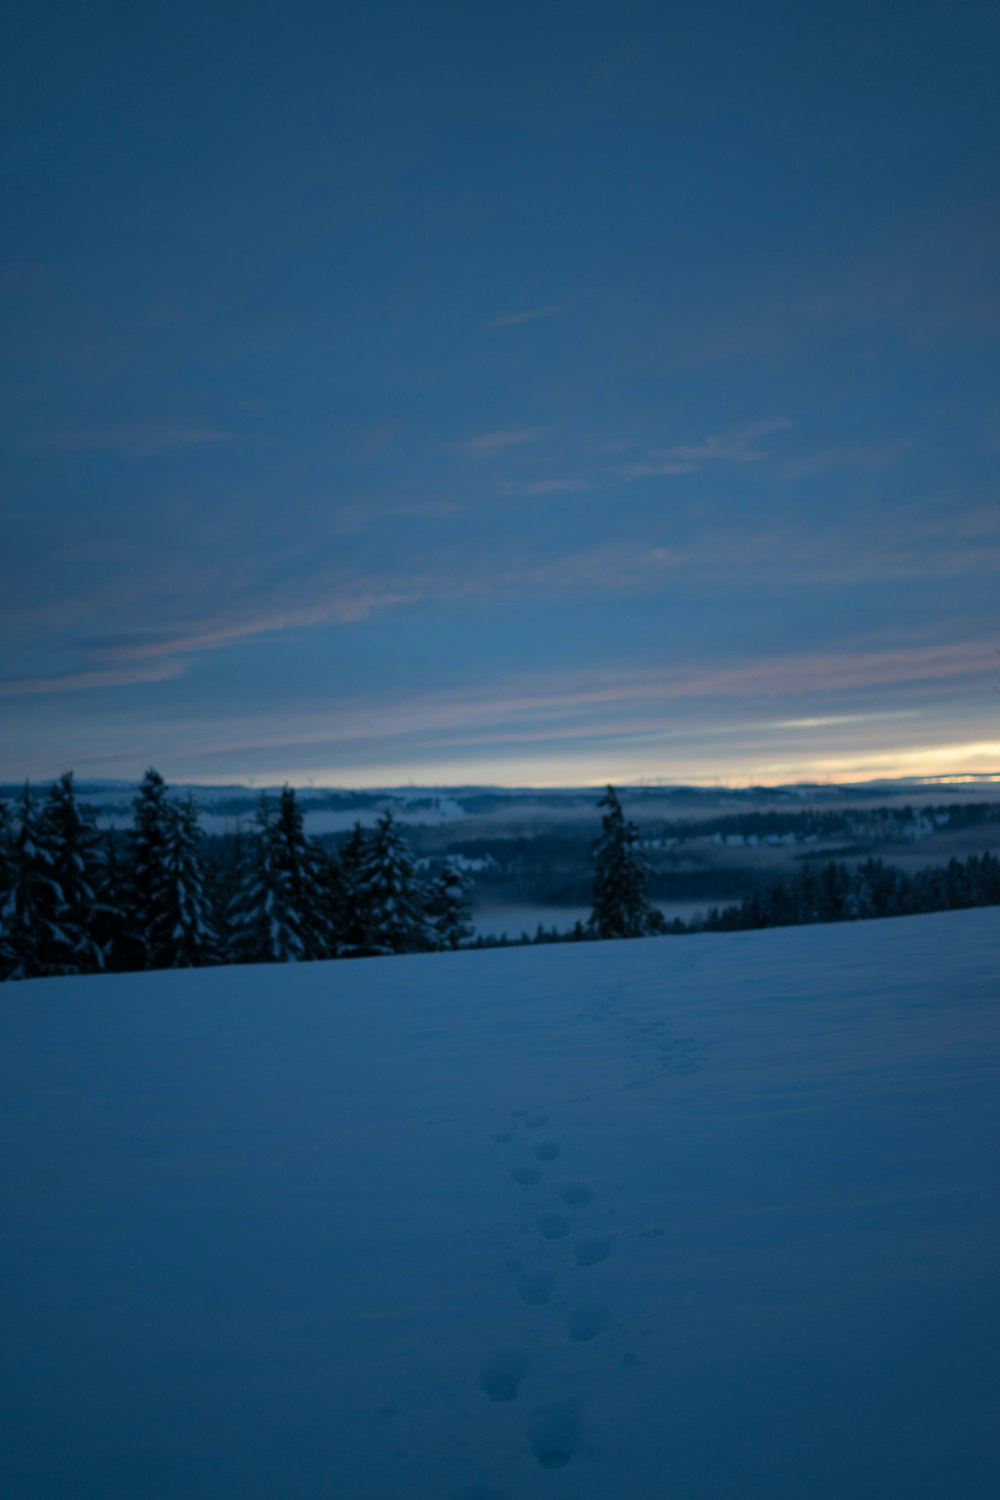 campo coberto de neve e árvores sob o céu azul durante o dia